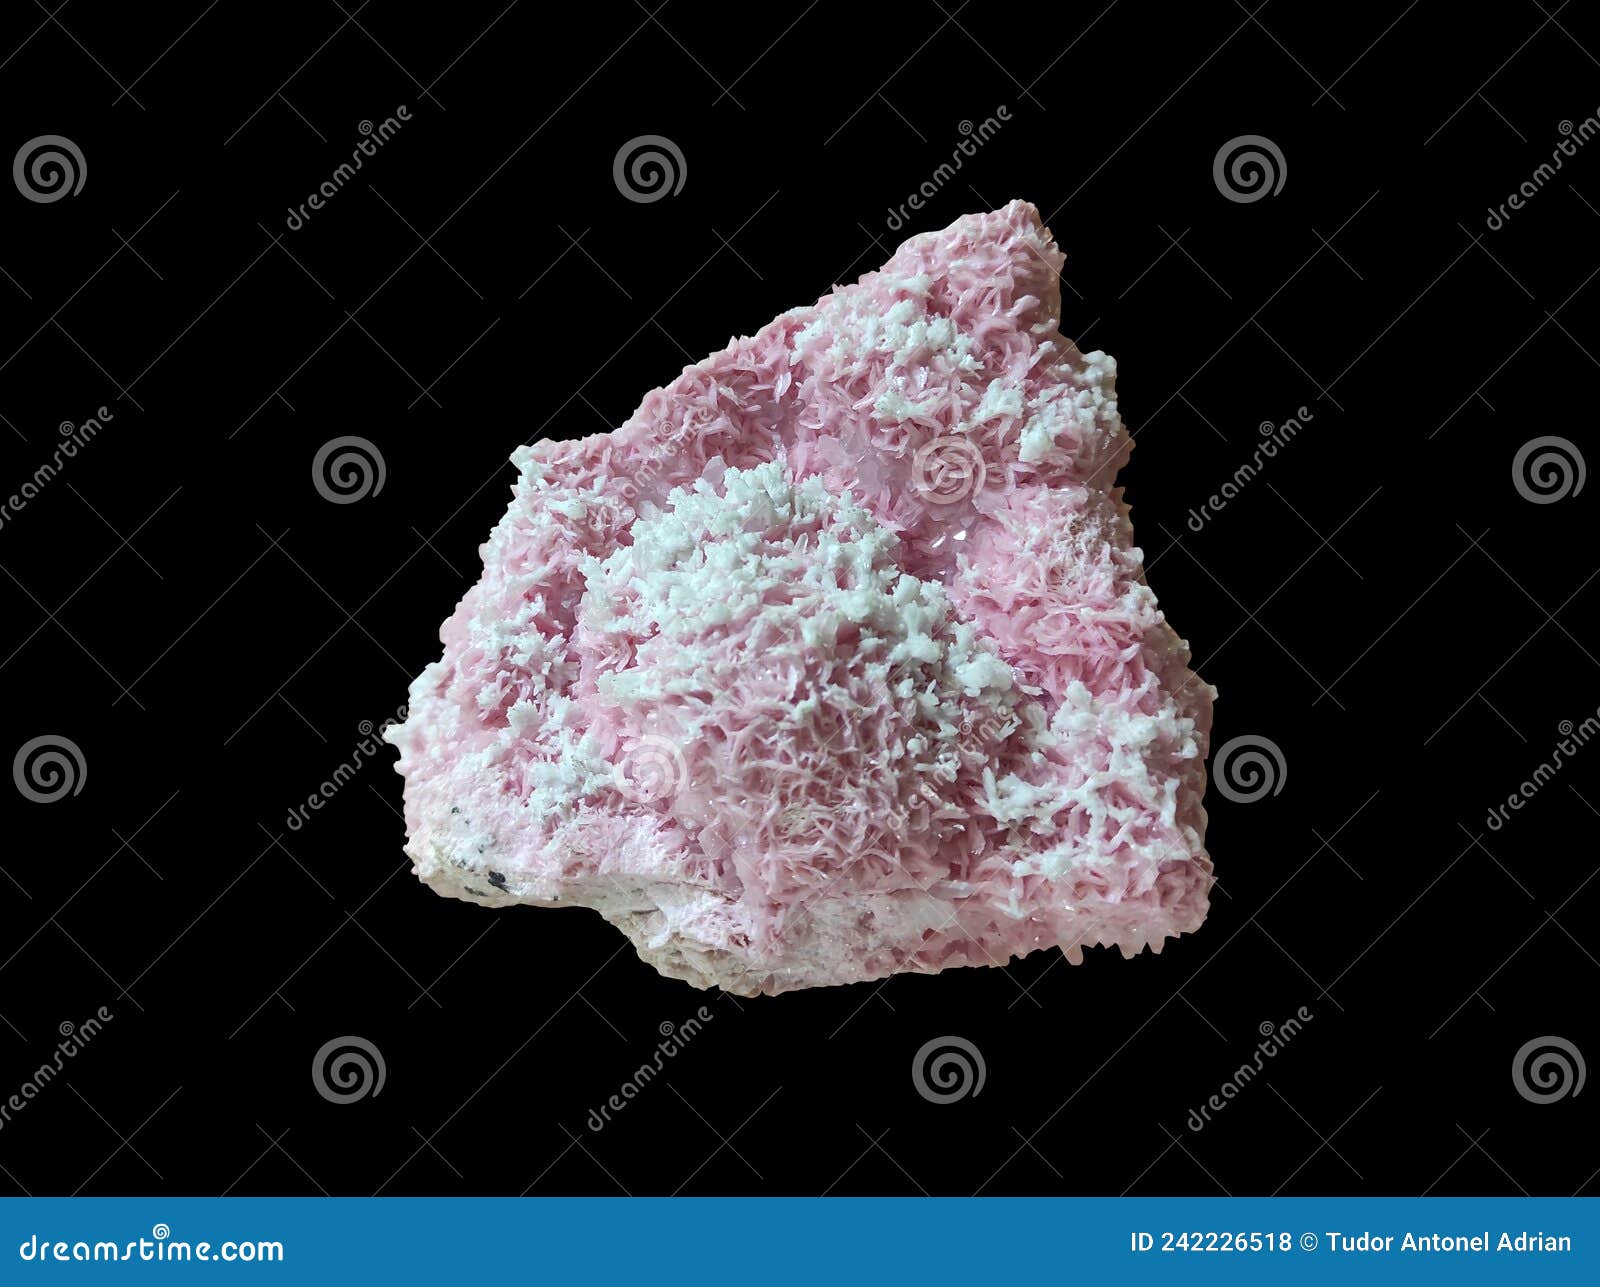 rhodochrosite mineral